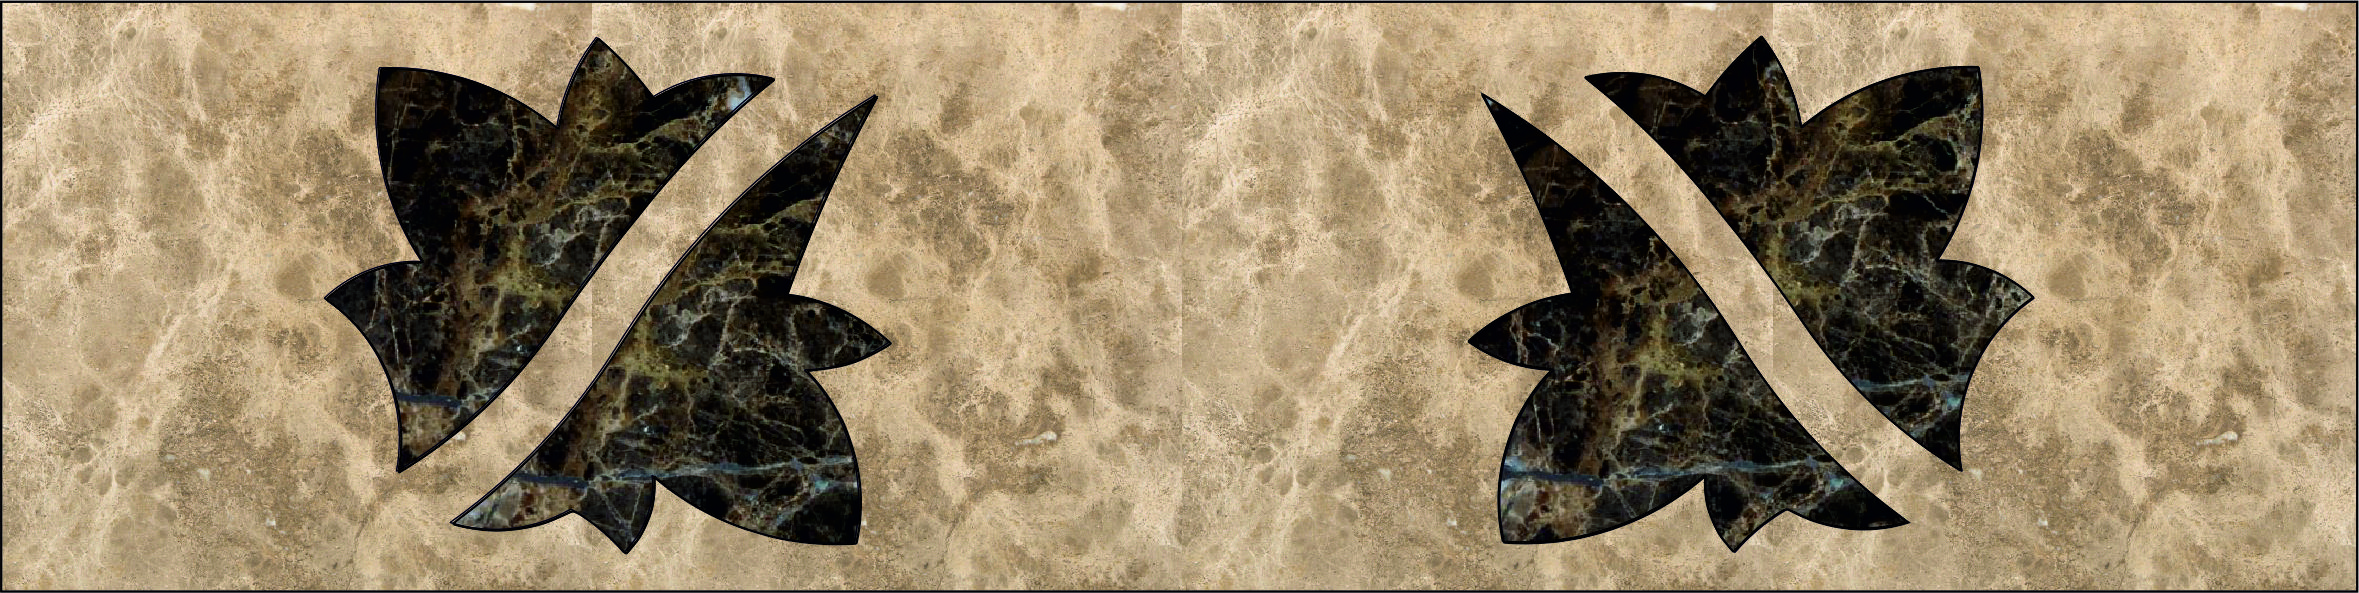 Каменный бордюр панно, арт. Б 8-1, размер, мм: 600х150х20.